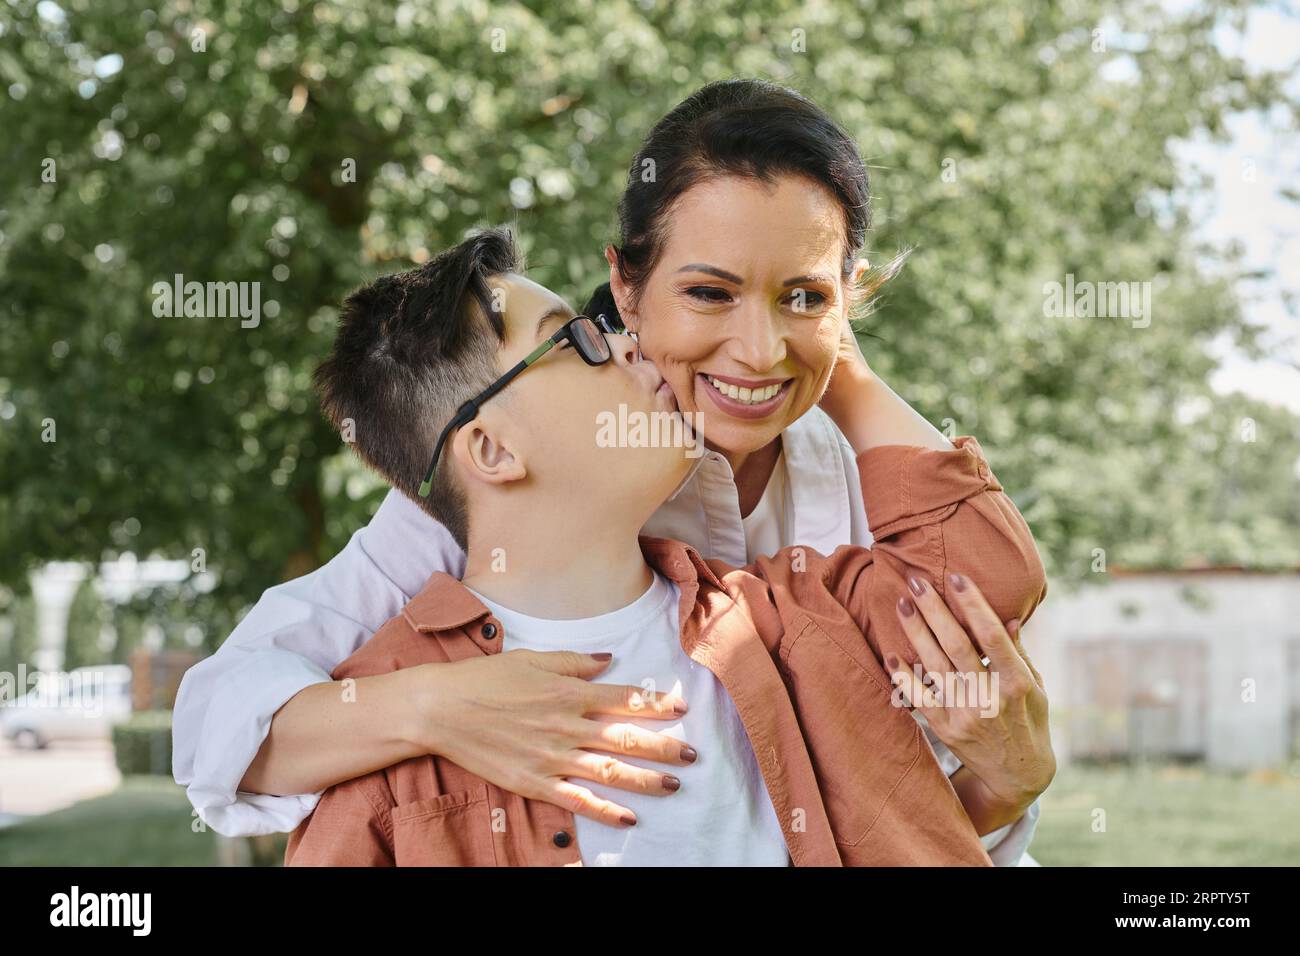 Kind mit Down-Syndrom, das eine lächelnde Mutter mittleren Alters während eines Parkausflugs küsst, glückliche Momente Stockfoto